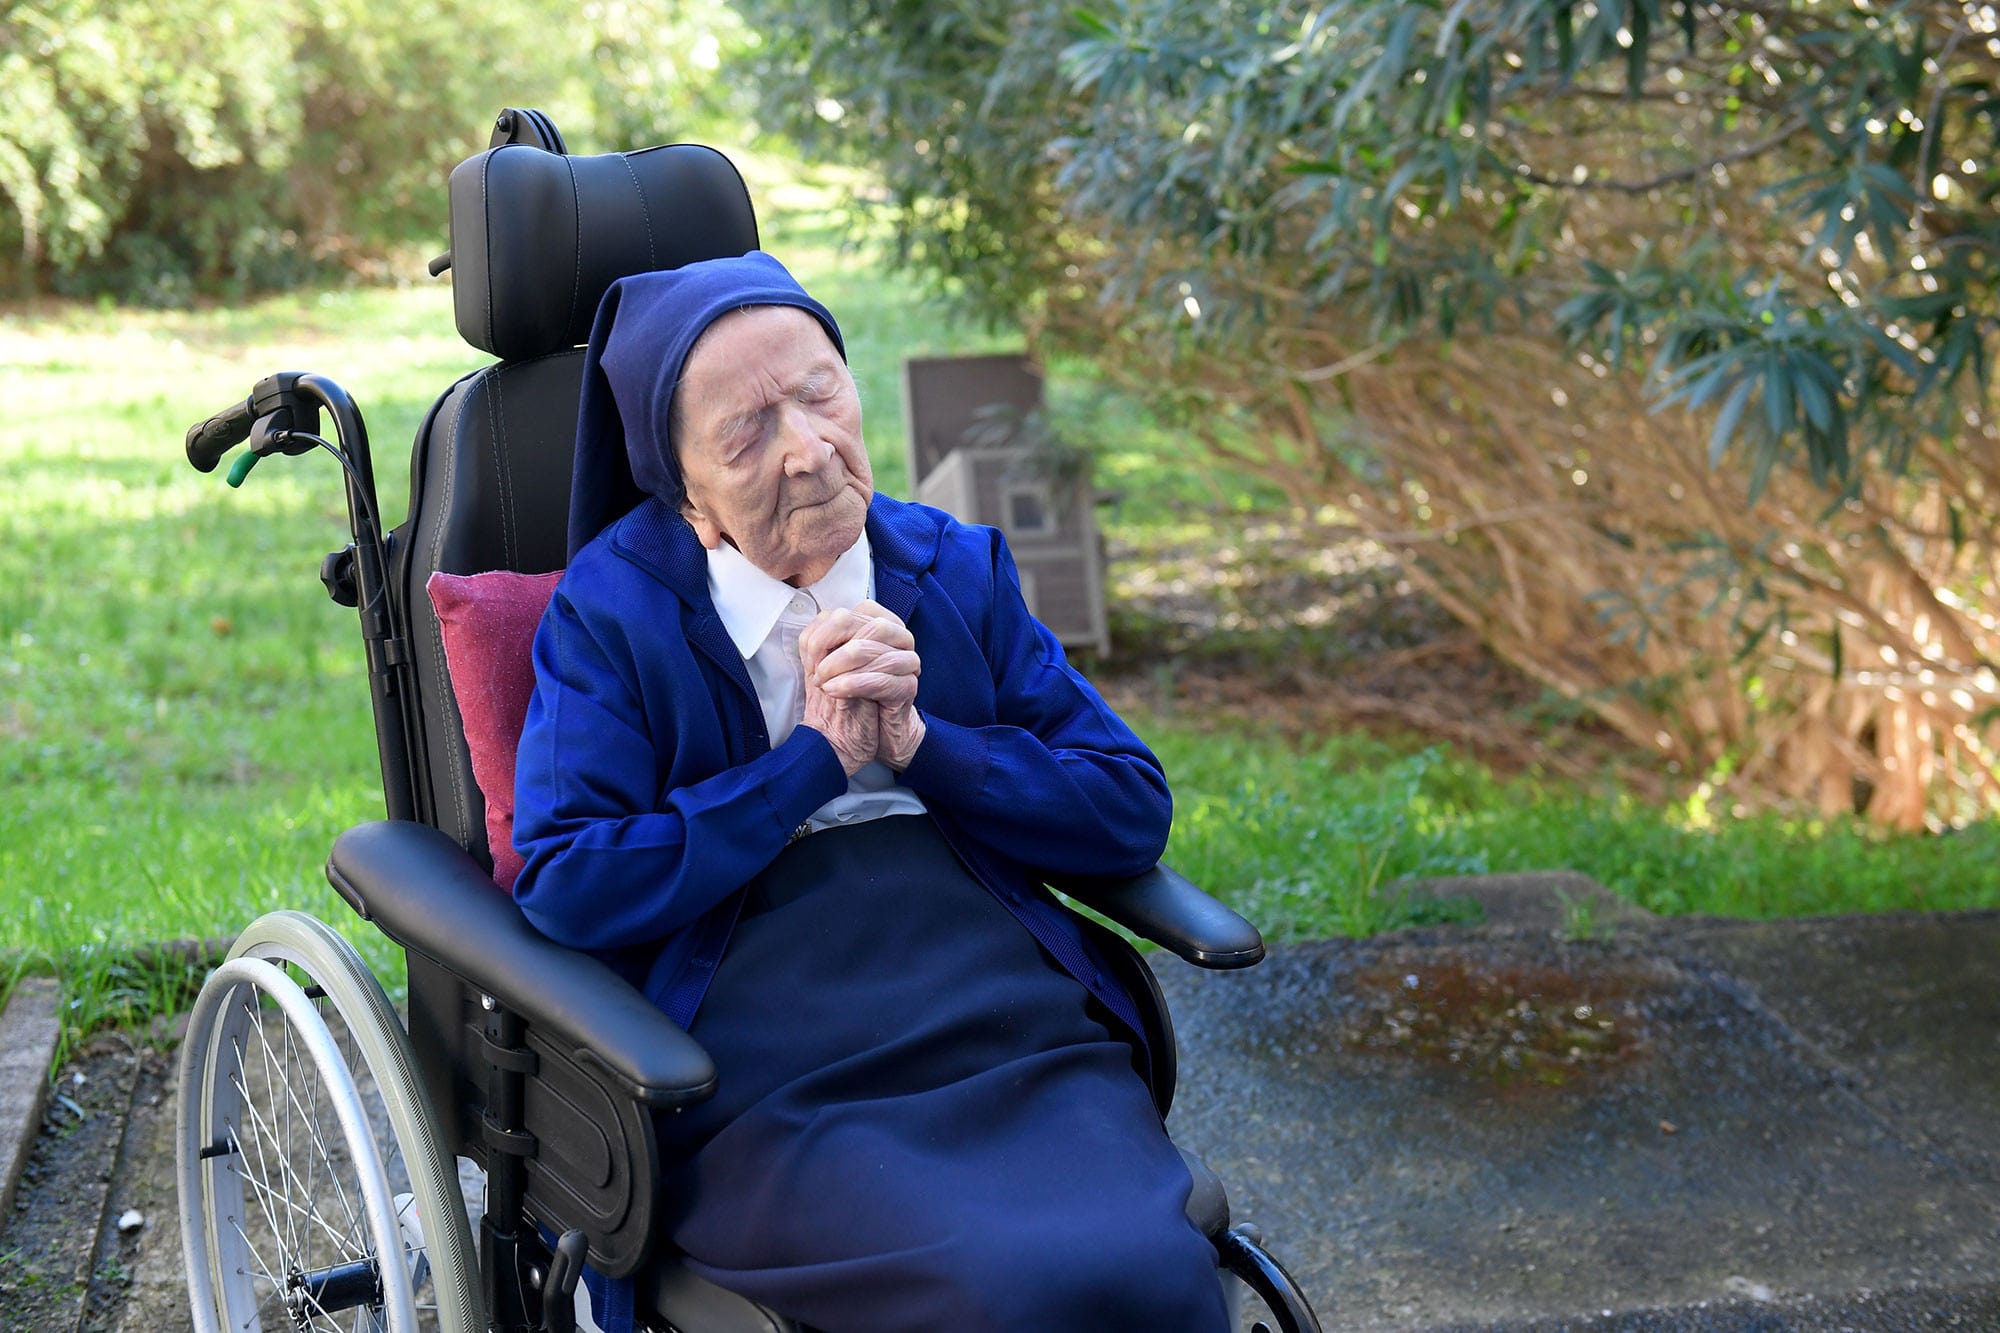 Co 3 thoi quen min - Bí quyết sống thọ 118 tuổi của cụ bà người Pháp: Không bao giờ ngồi ăn một mình